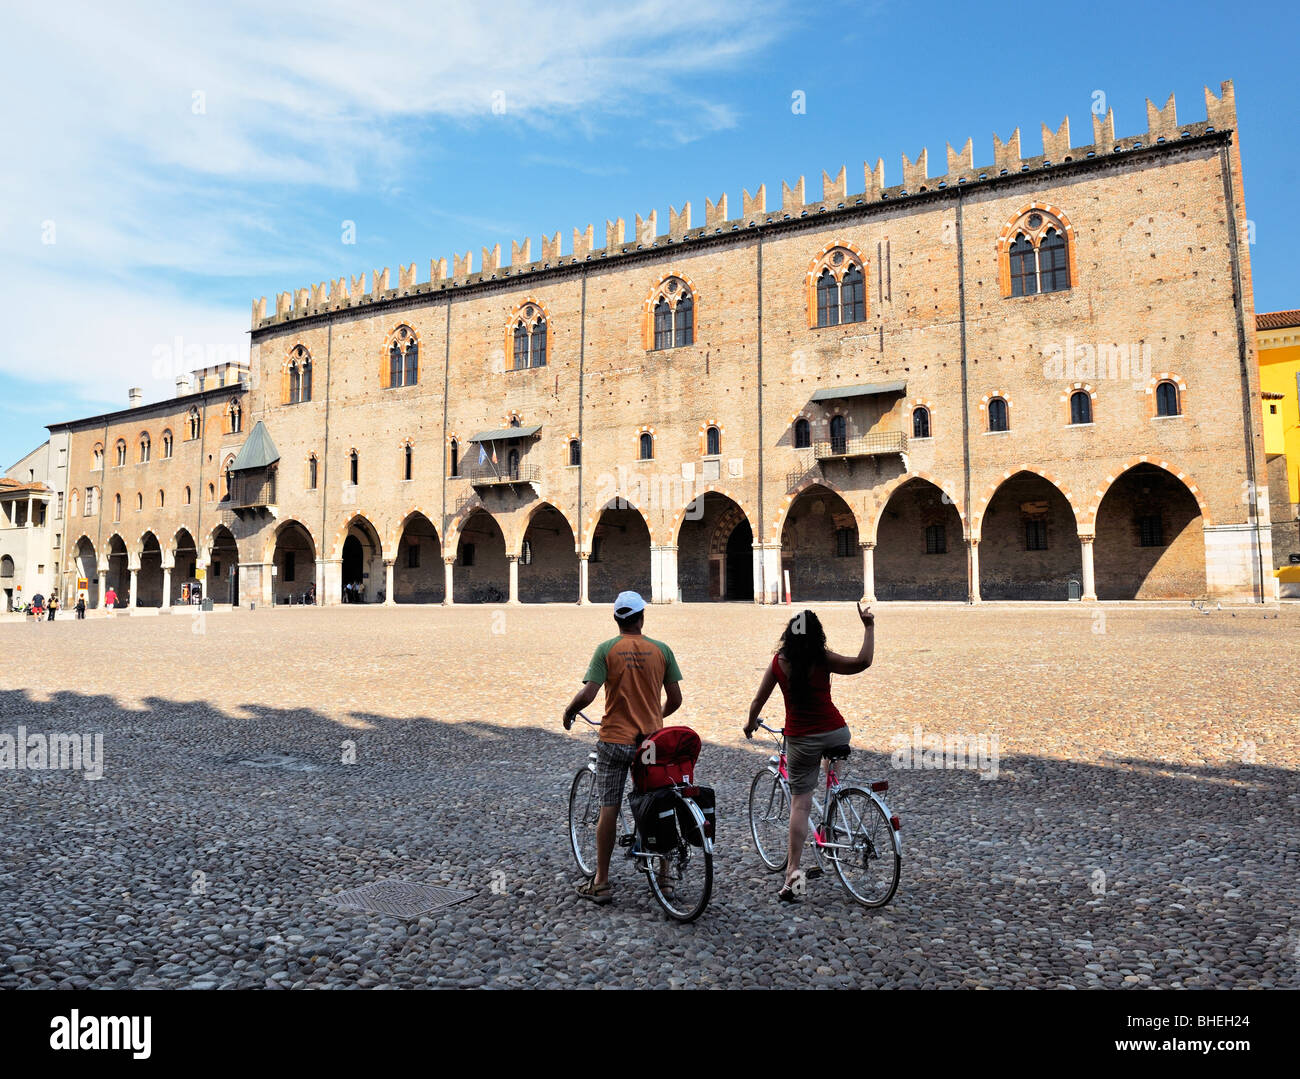 Il medievale Palazzo Ducale, il Palazzo Ducale, attraversata la piazza Sordello nella città medievale di Mantova, Lombardia, Italia. Foto Stock